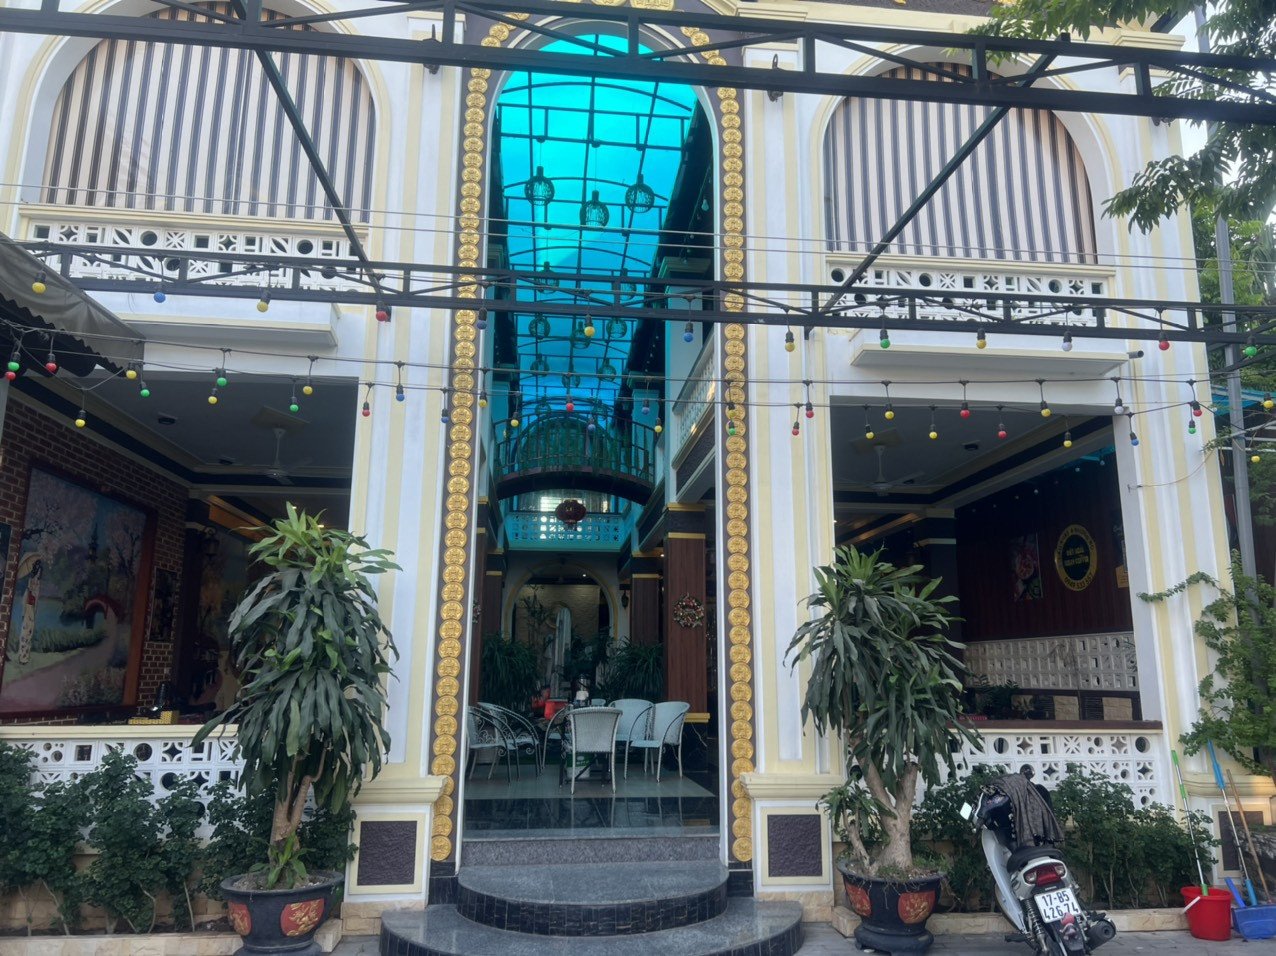 Bán nhà Rêu Food new new giá tốt vị trí vô cùng đắc địa tại Huyện Quỳnh Phụ, Tỉnh Thái Bình 5